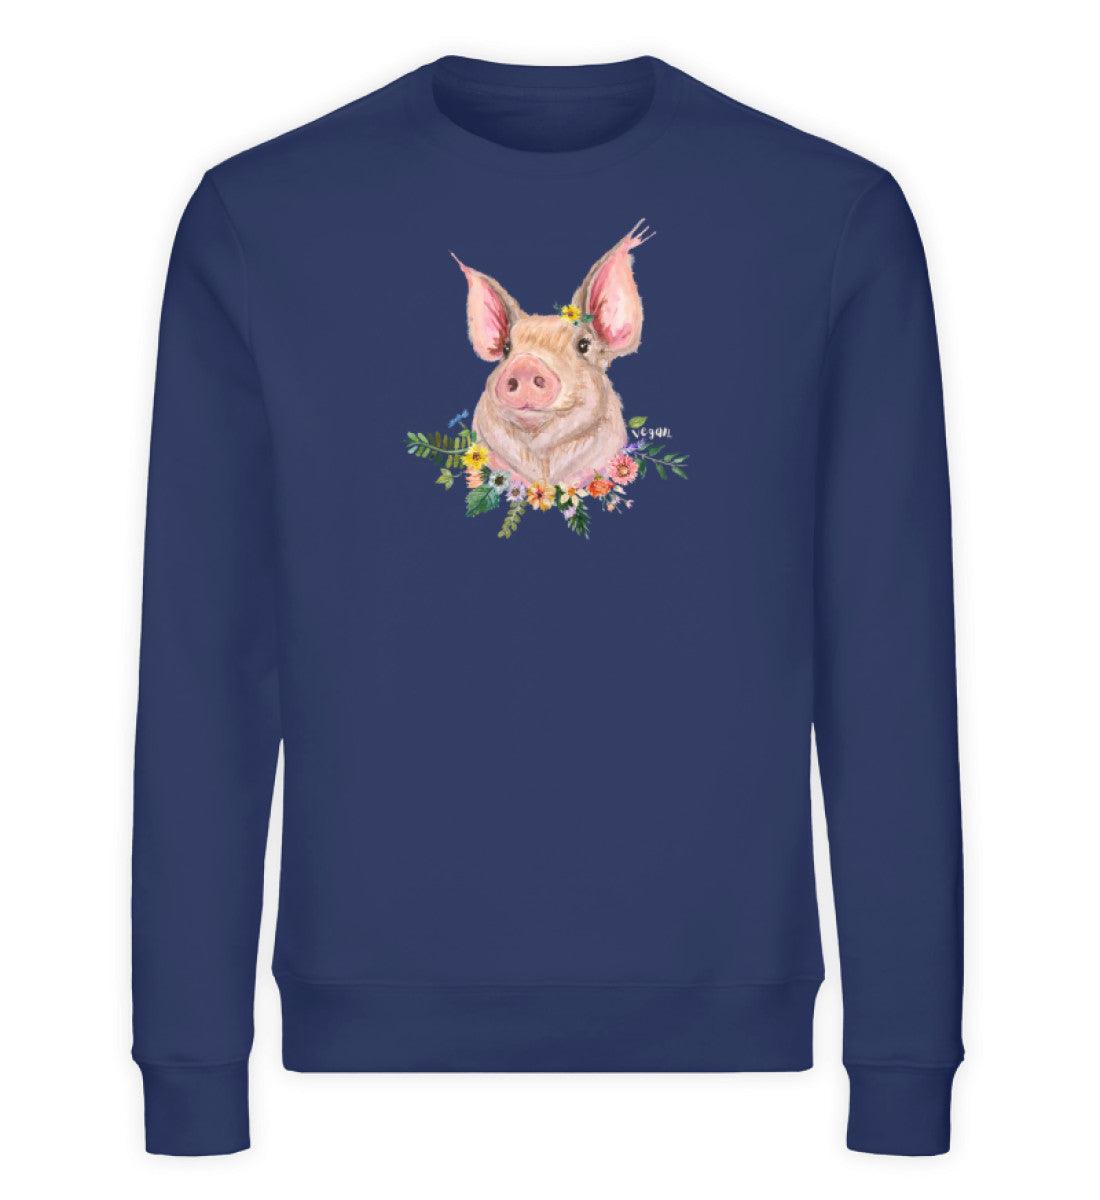 Vegan Schweinchen [Svenja Rakel] - Unisex Organic Sweatshirt - Team Vegan © vegan t shirt